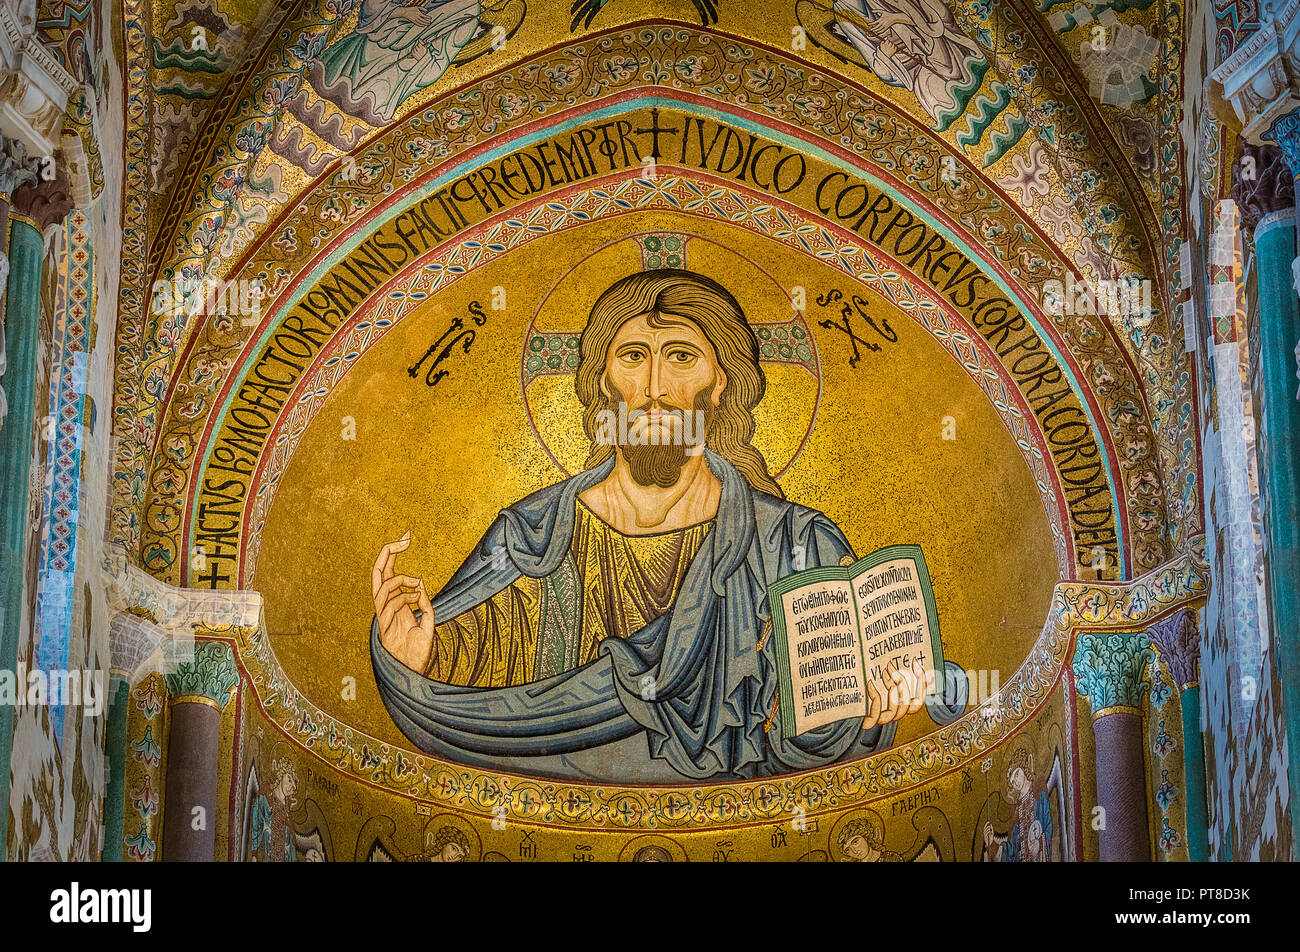 Goldene Mosaik mit Christus Pantokrator in der Apsis der Kathedrale von Cefalù. Sizilien, Süditalien. Stockfoto